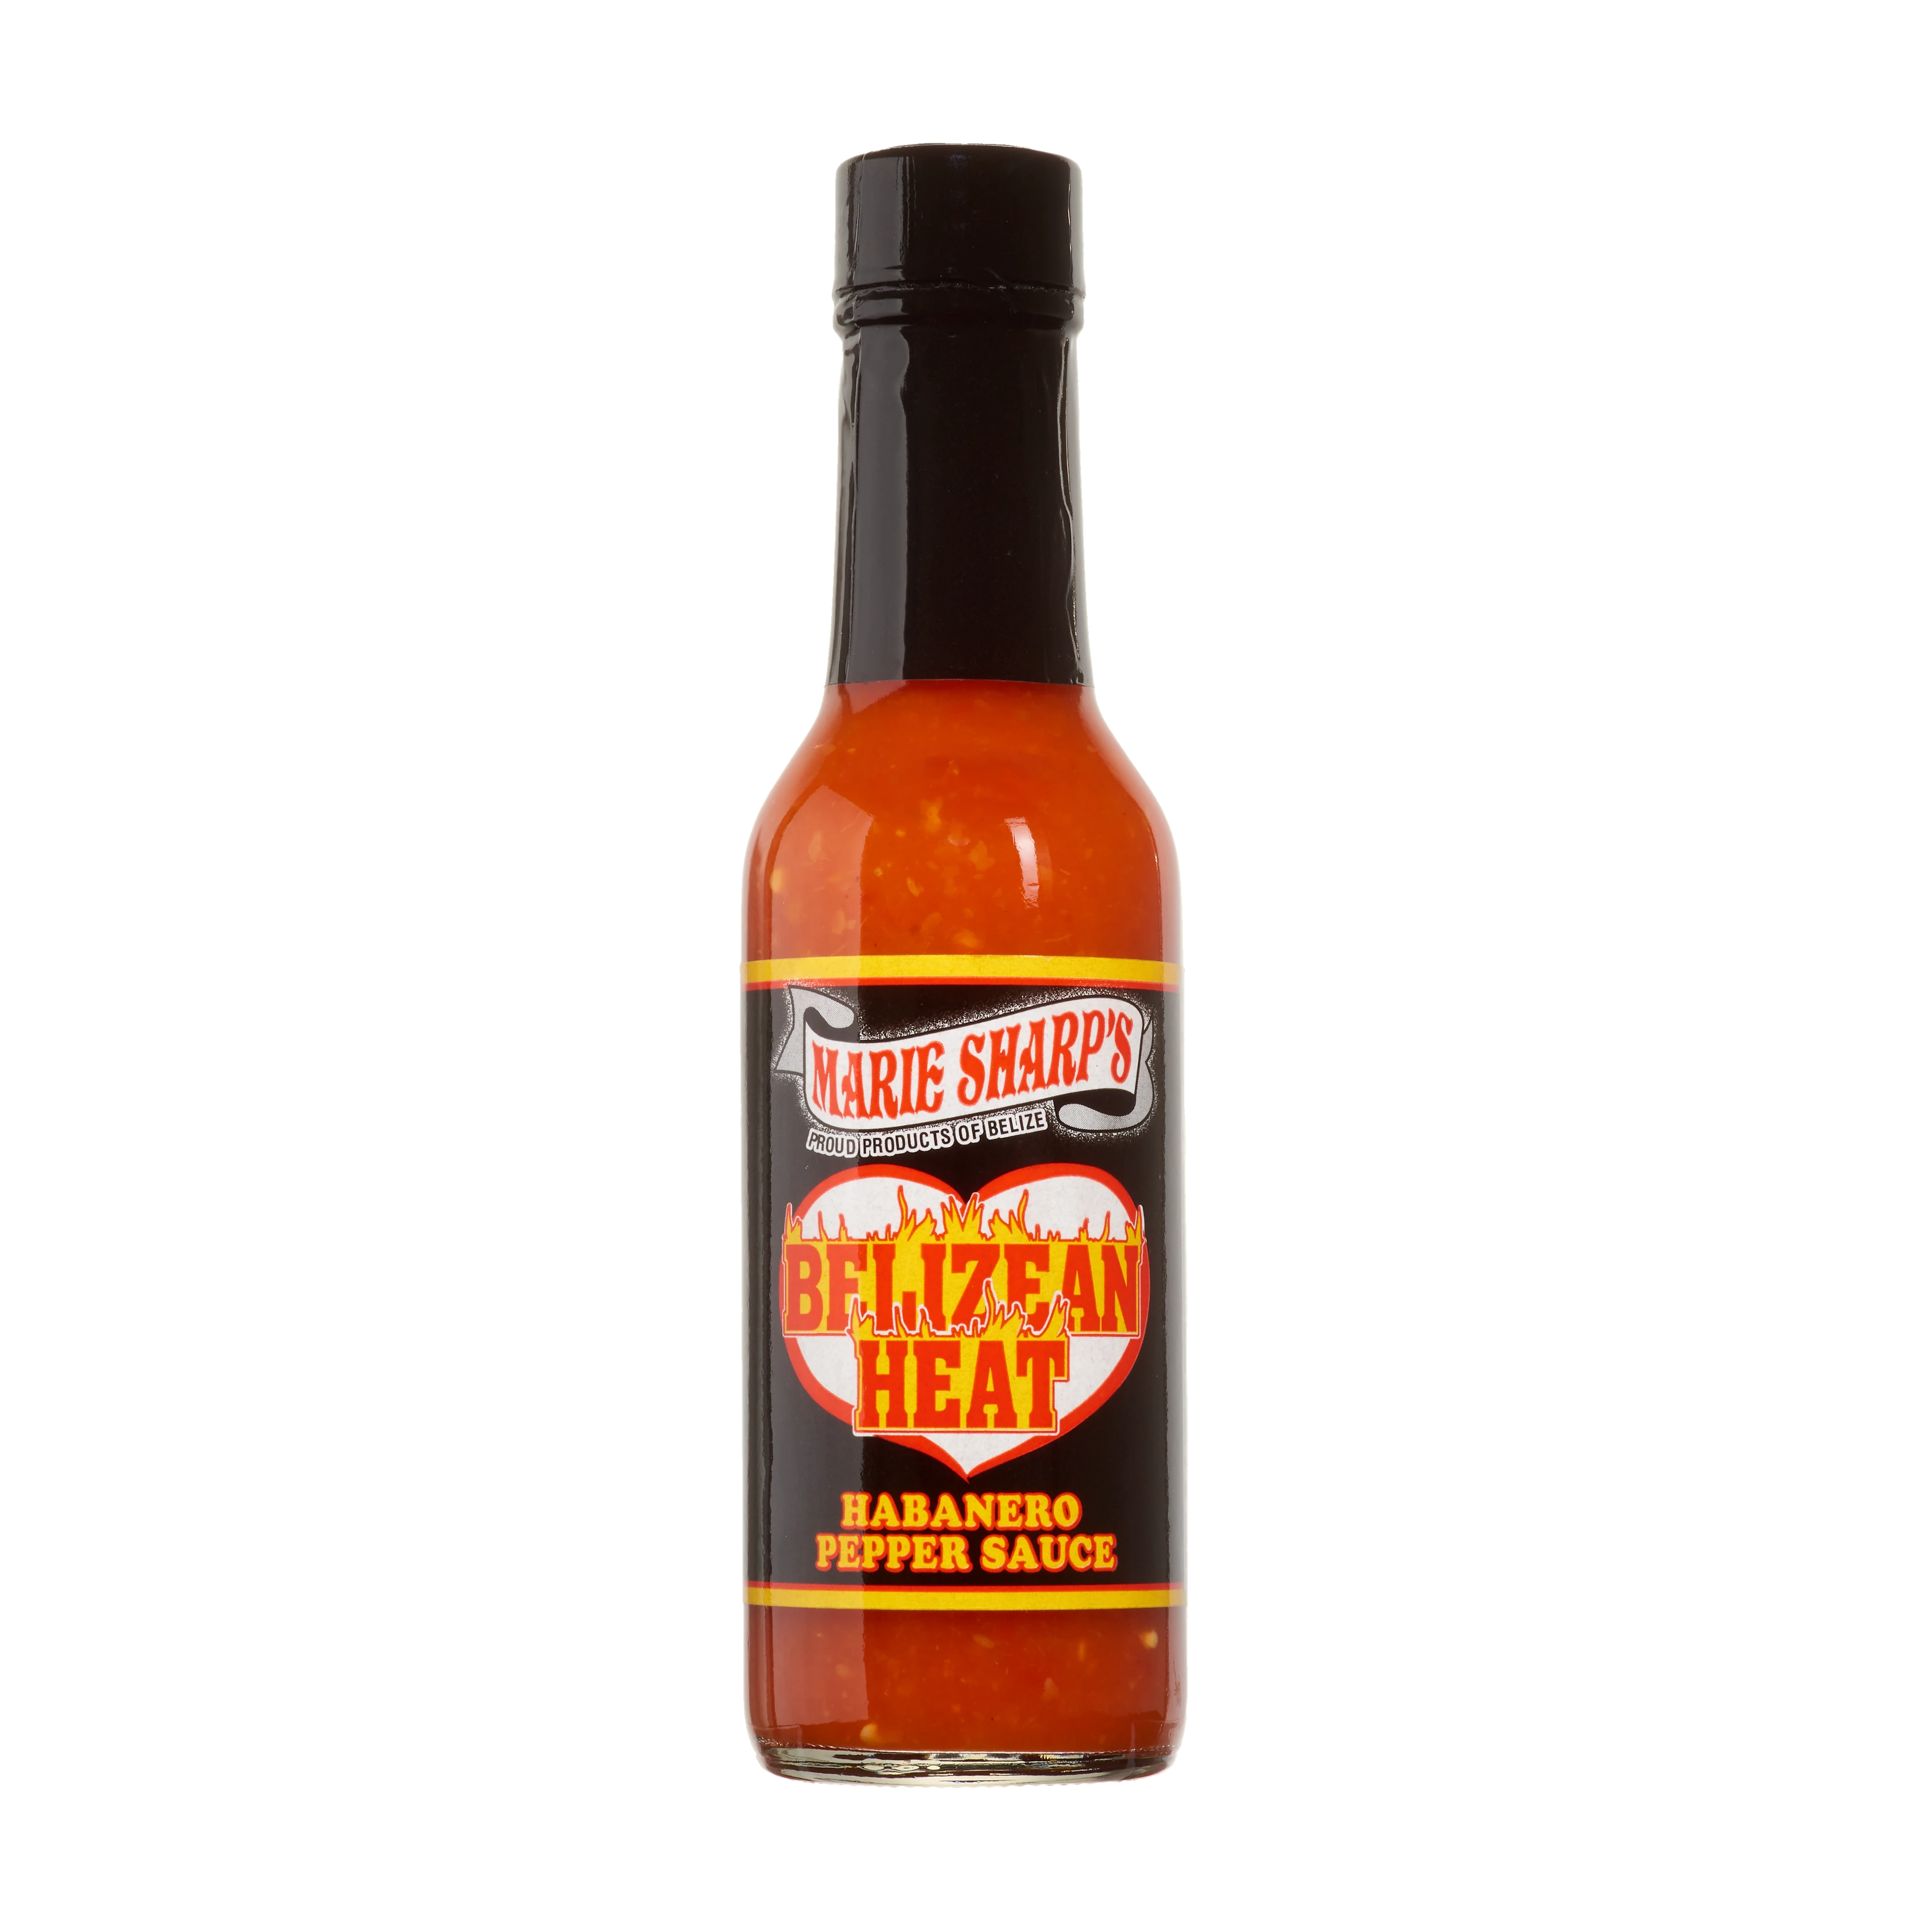 Marie Sharp's Belizean Heat Habanero Pepper Sauce  